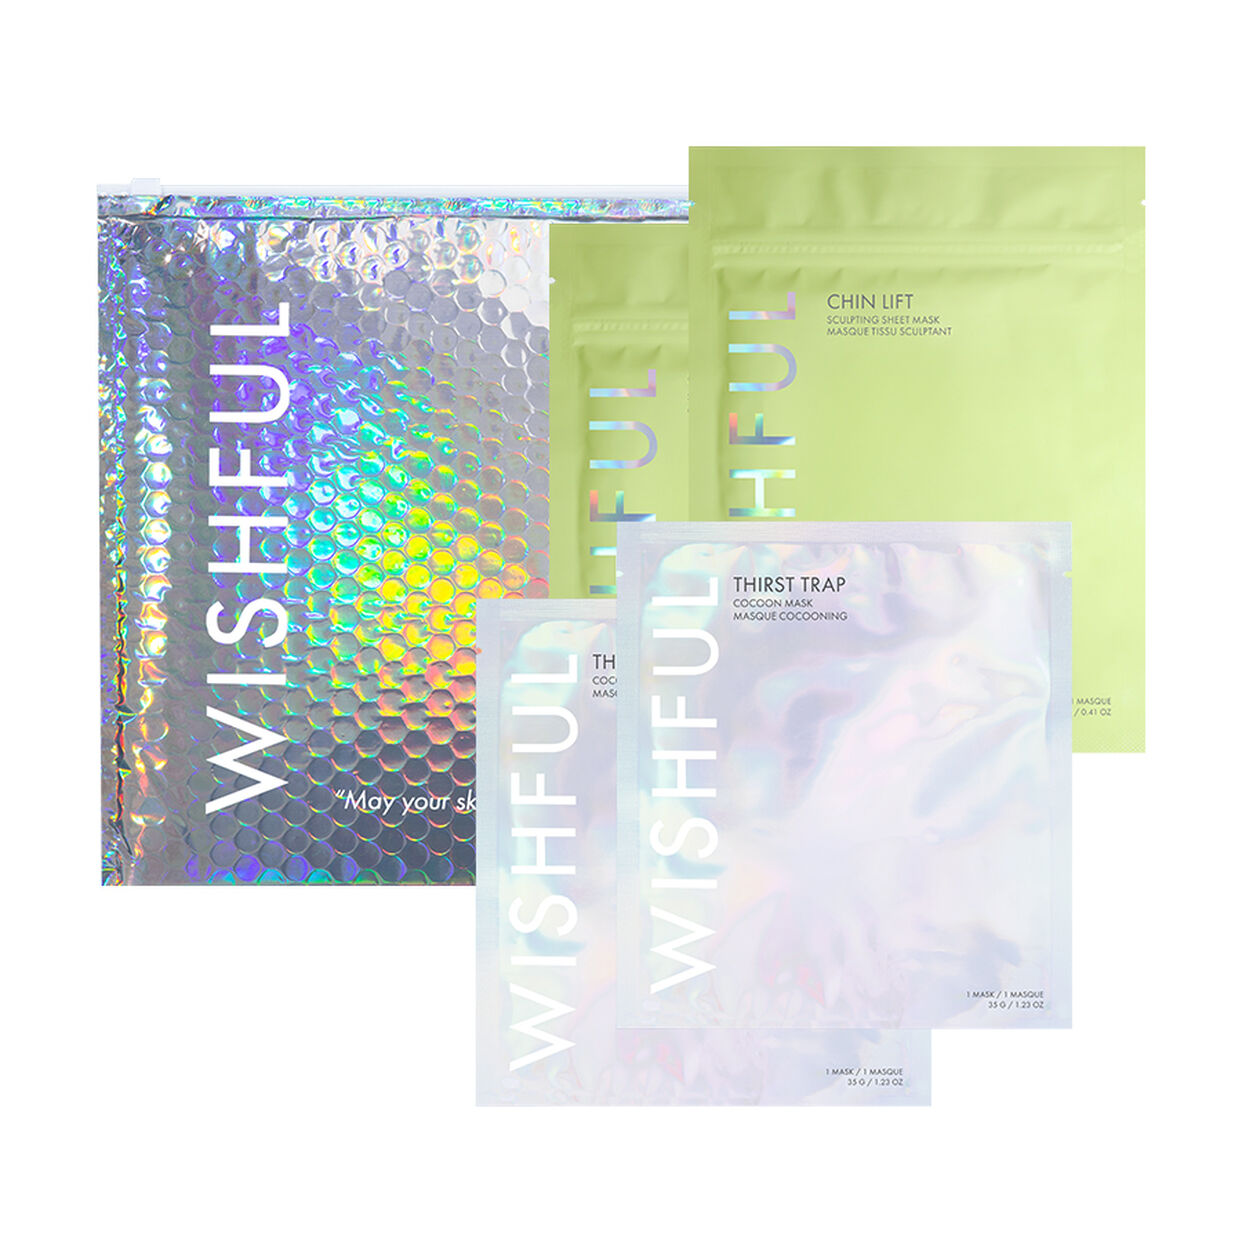 WISHFUL | Thirst Trap + Chin Lift “Sheet Mask Party” Set